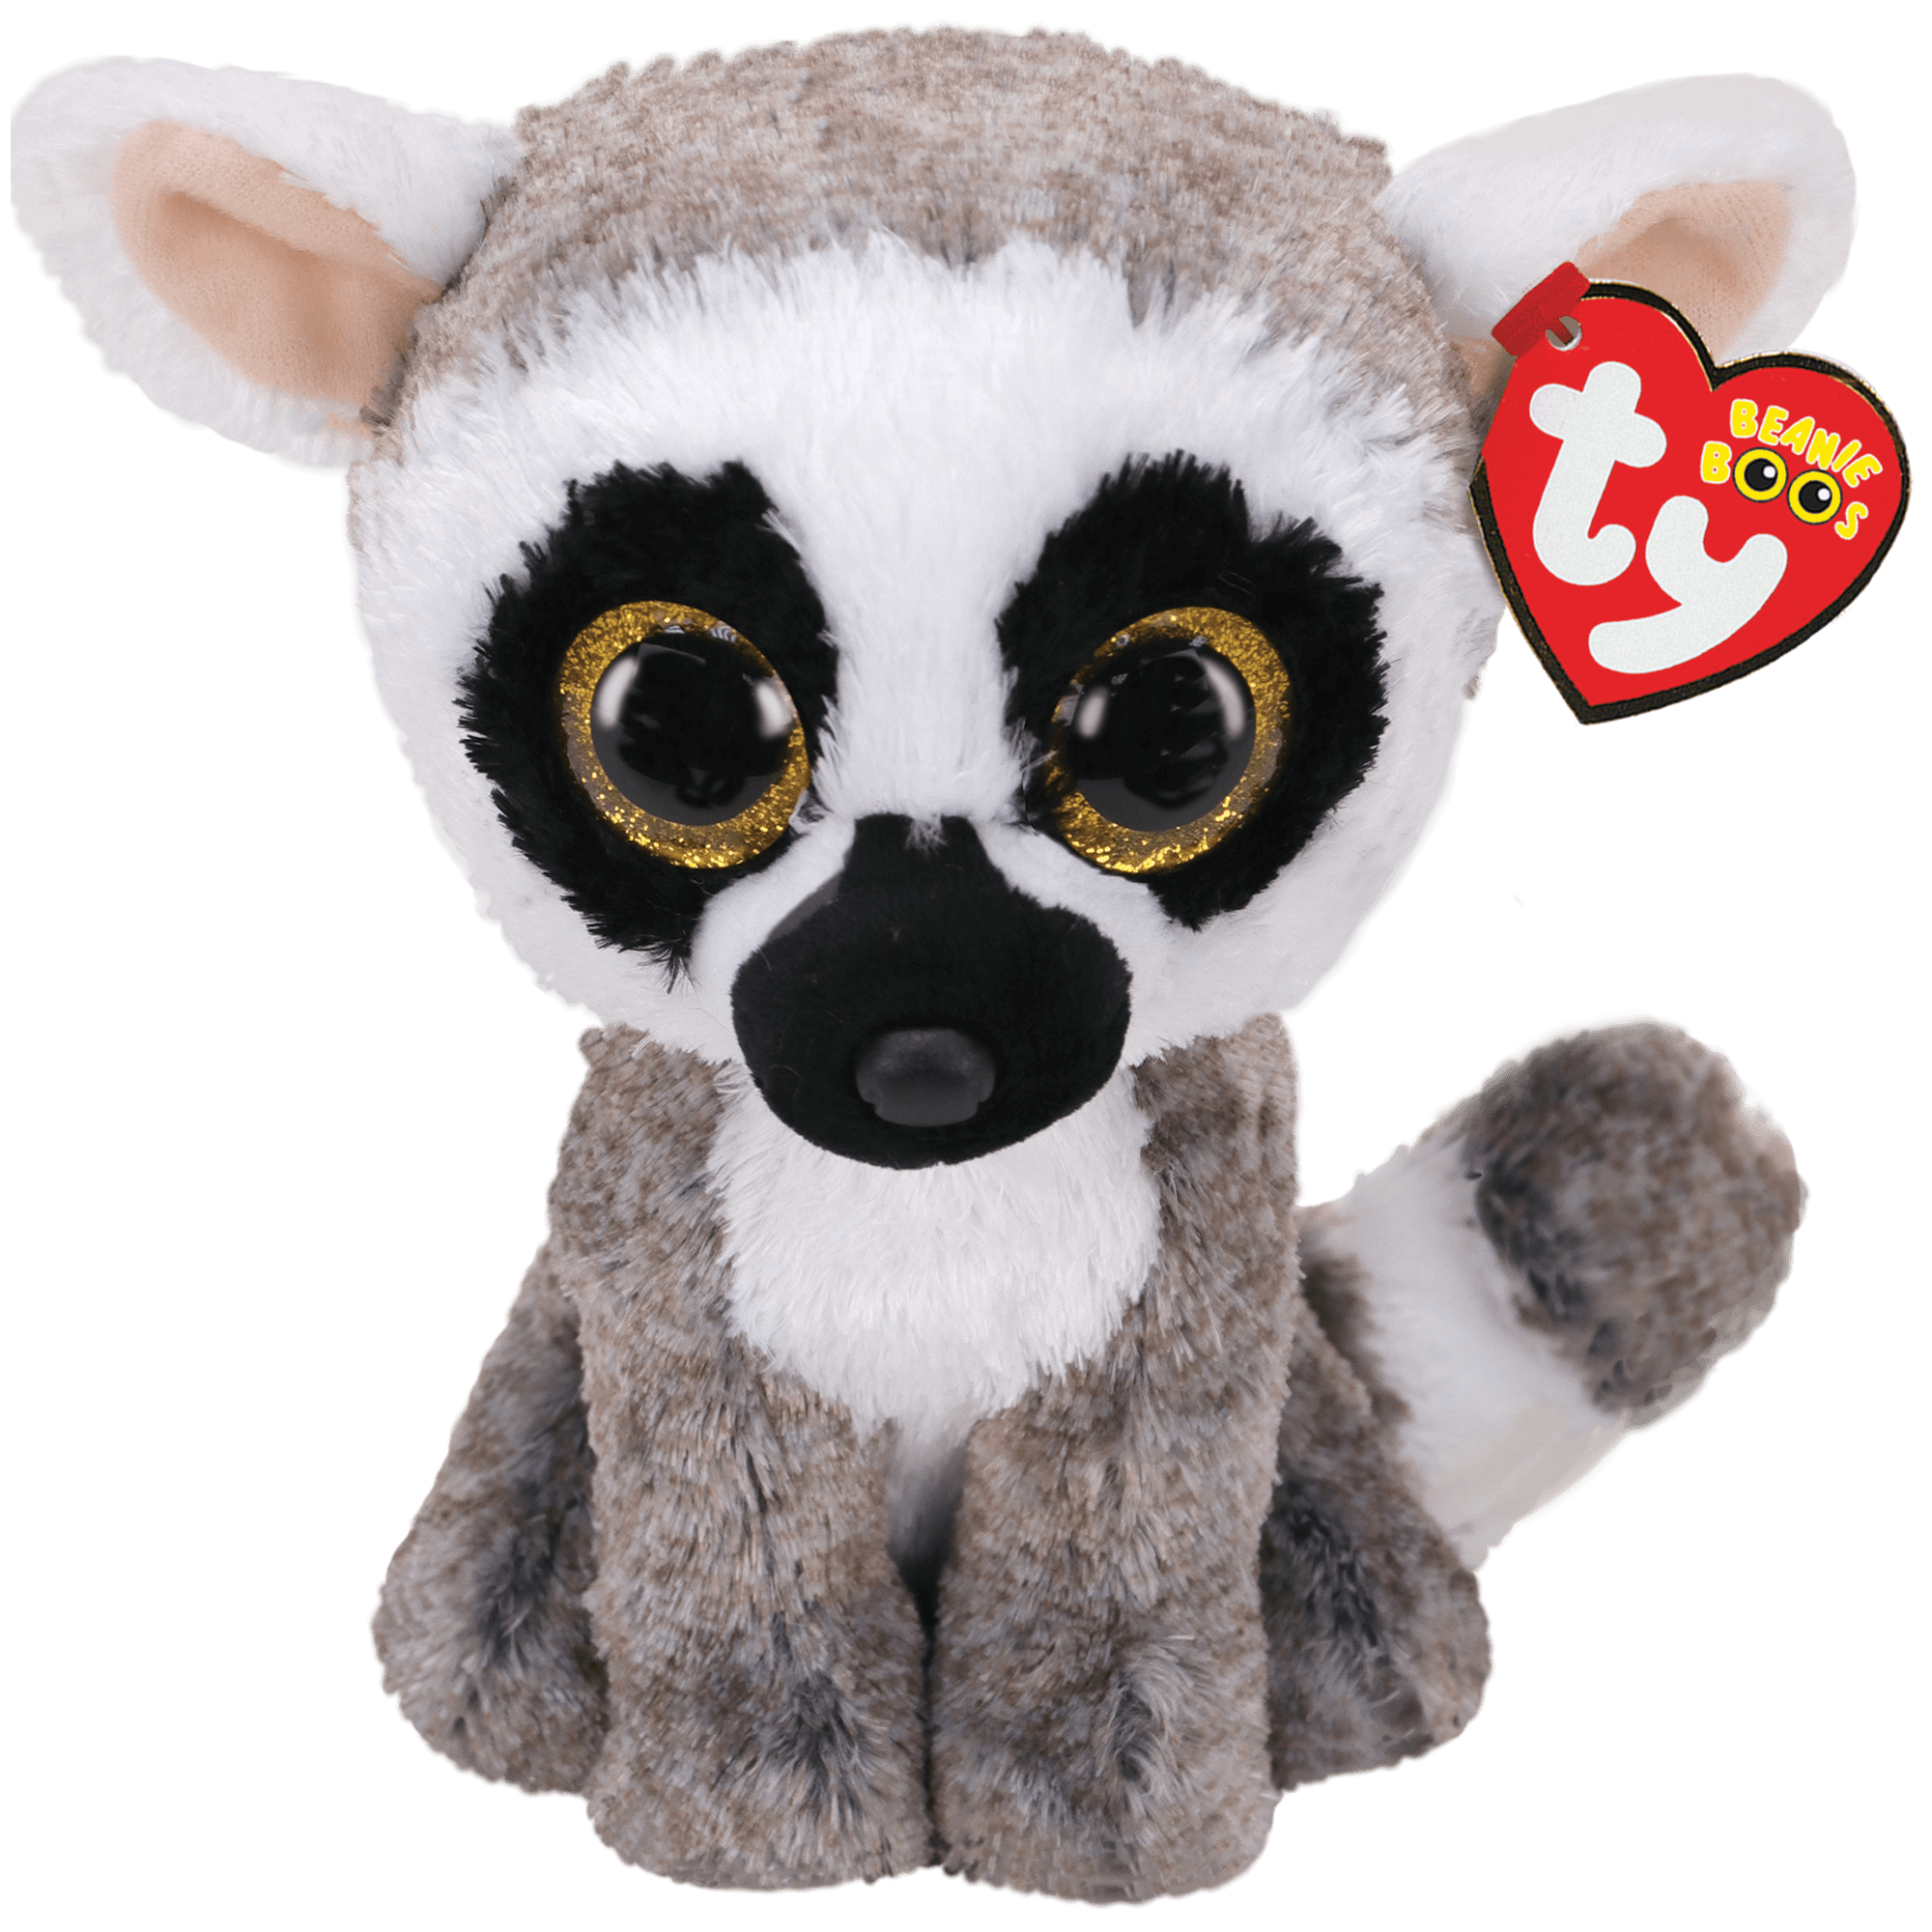 stuffed animal Linus the Lemur